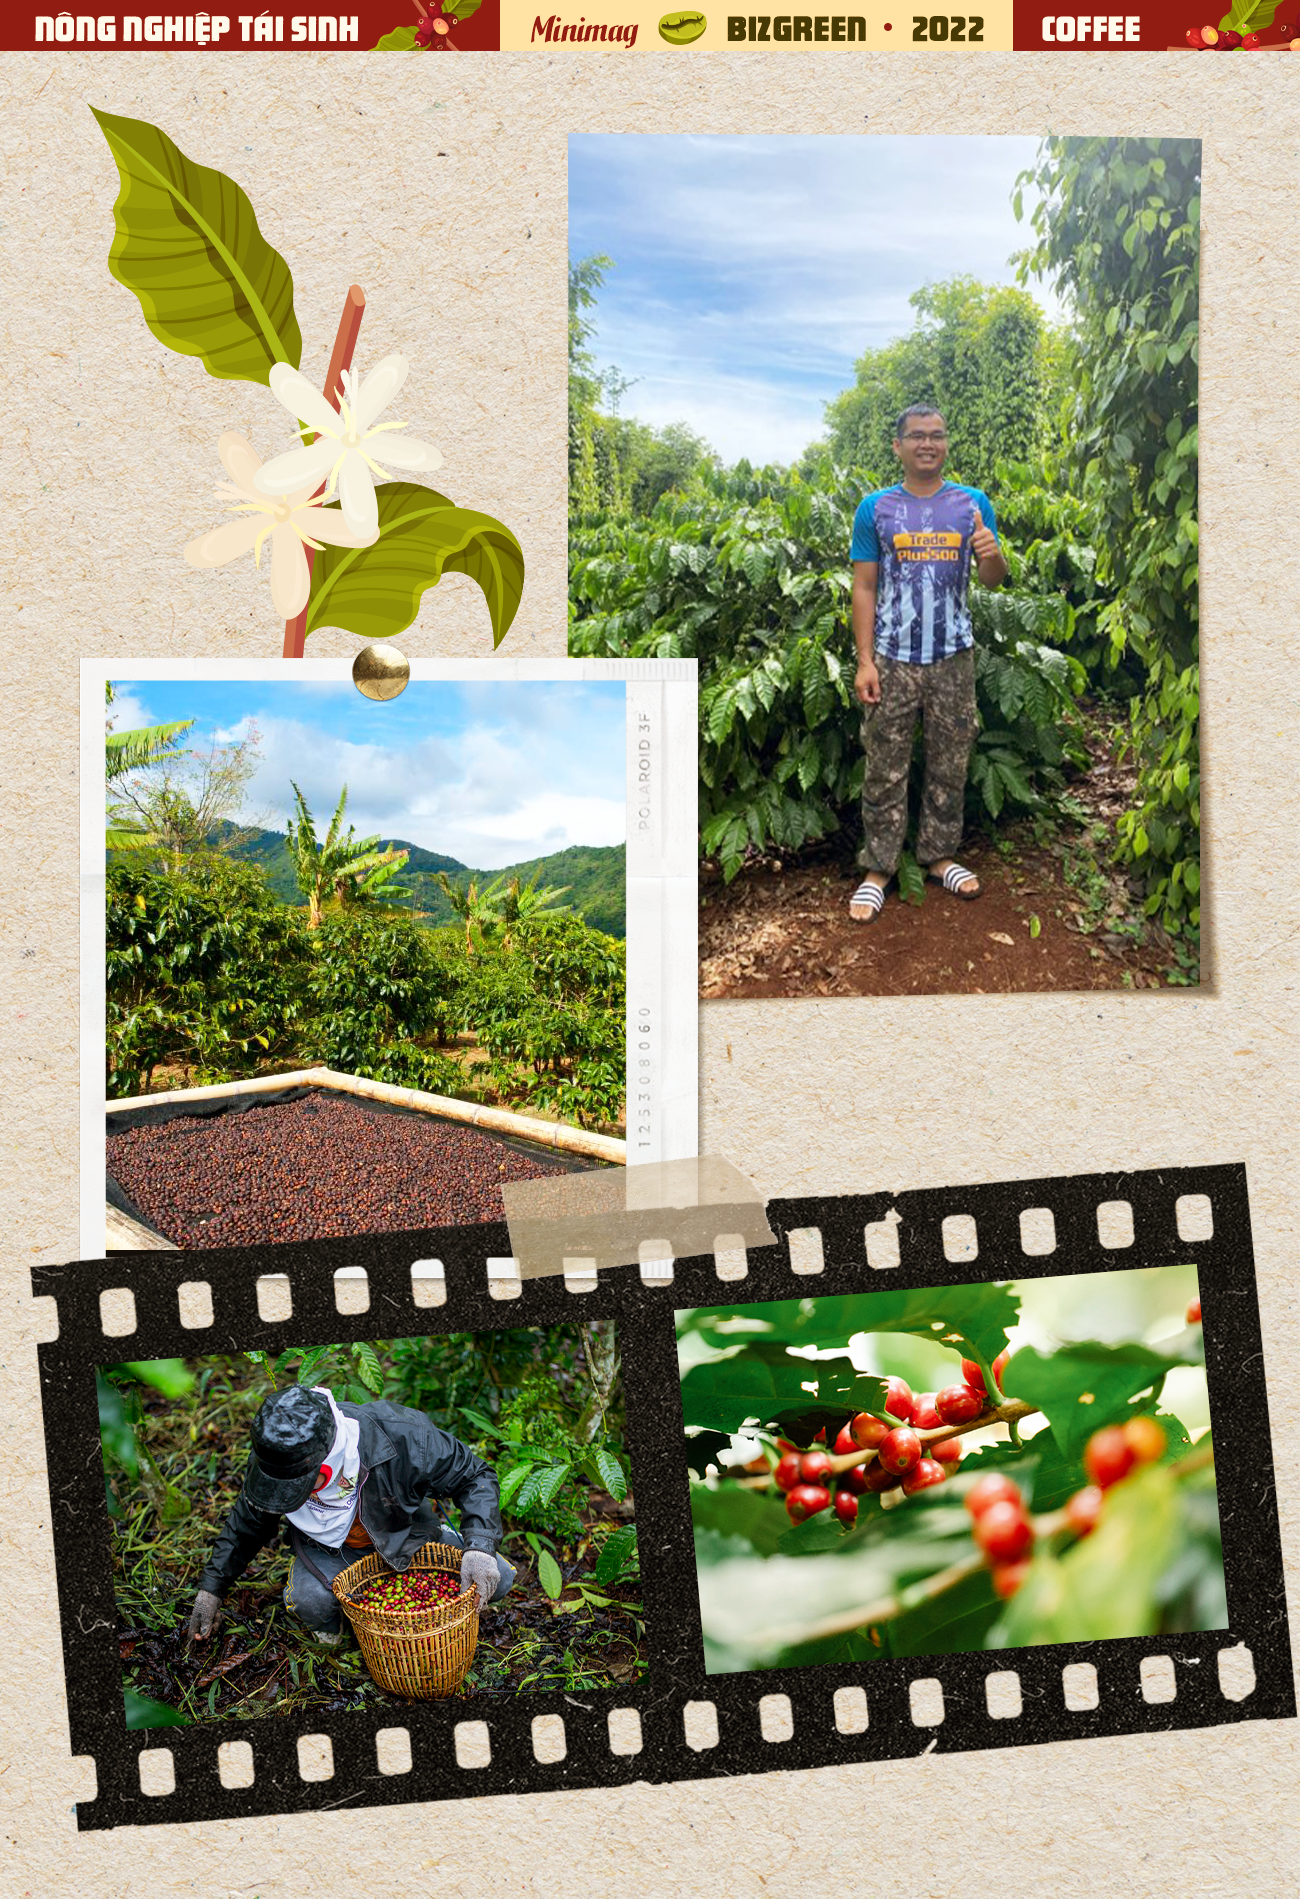 Với bức ảnh cảnh quan đẹp tuyệt vời của người đàn ông trồng cà phê, bạn cảm nhận được sức sống của nông nghiệp Việt Nam. Với những nỗ lực và cố gắng không ngừng nghỉ, người trồng cà phê Việt Nam đã góp phần làm nên thành công của nền kinh tế quốc gia. Hãy cùng đến và khám phá những bức ảnh ấn tượng về ngành nông nghiệp của Việt Nam.